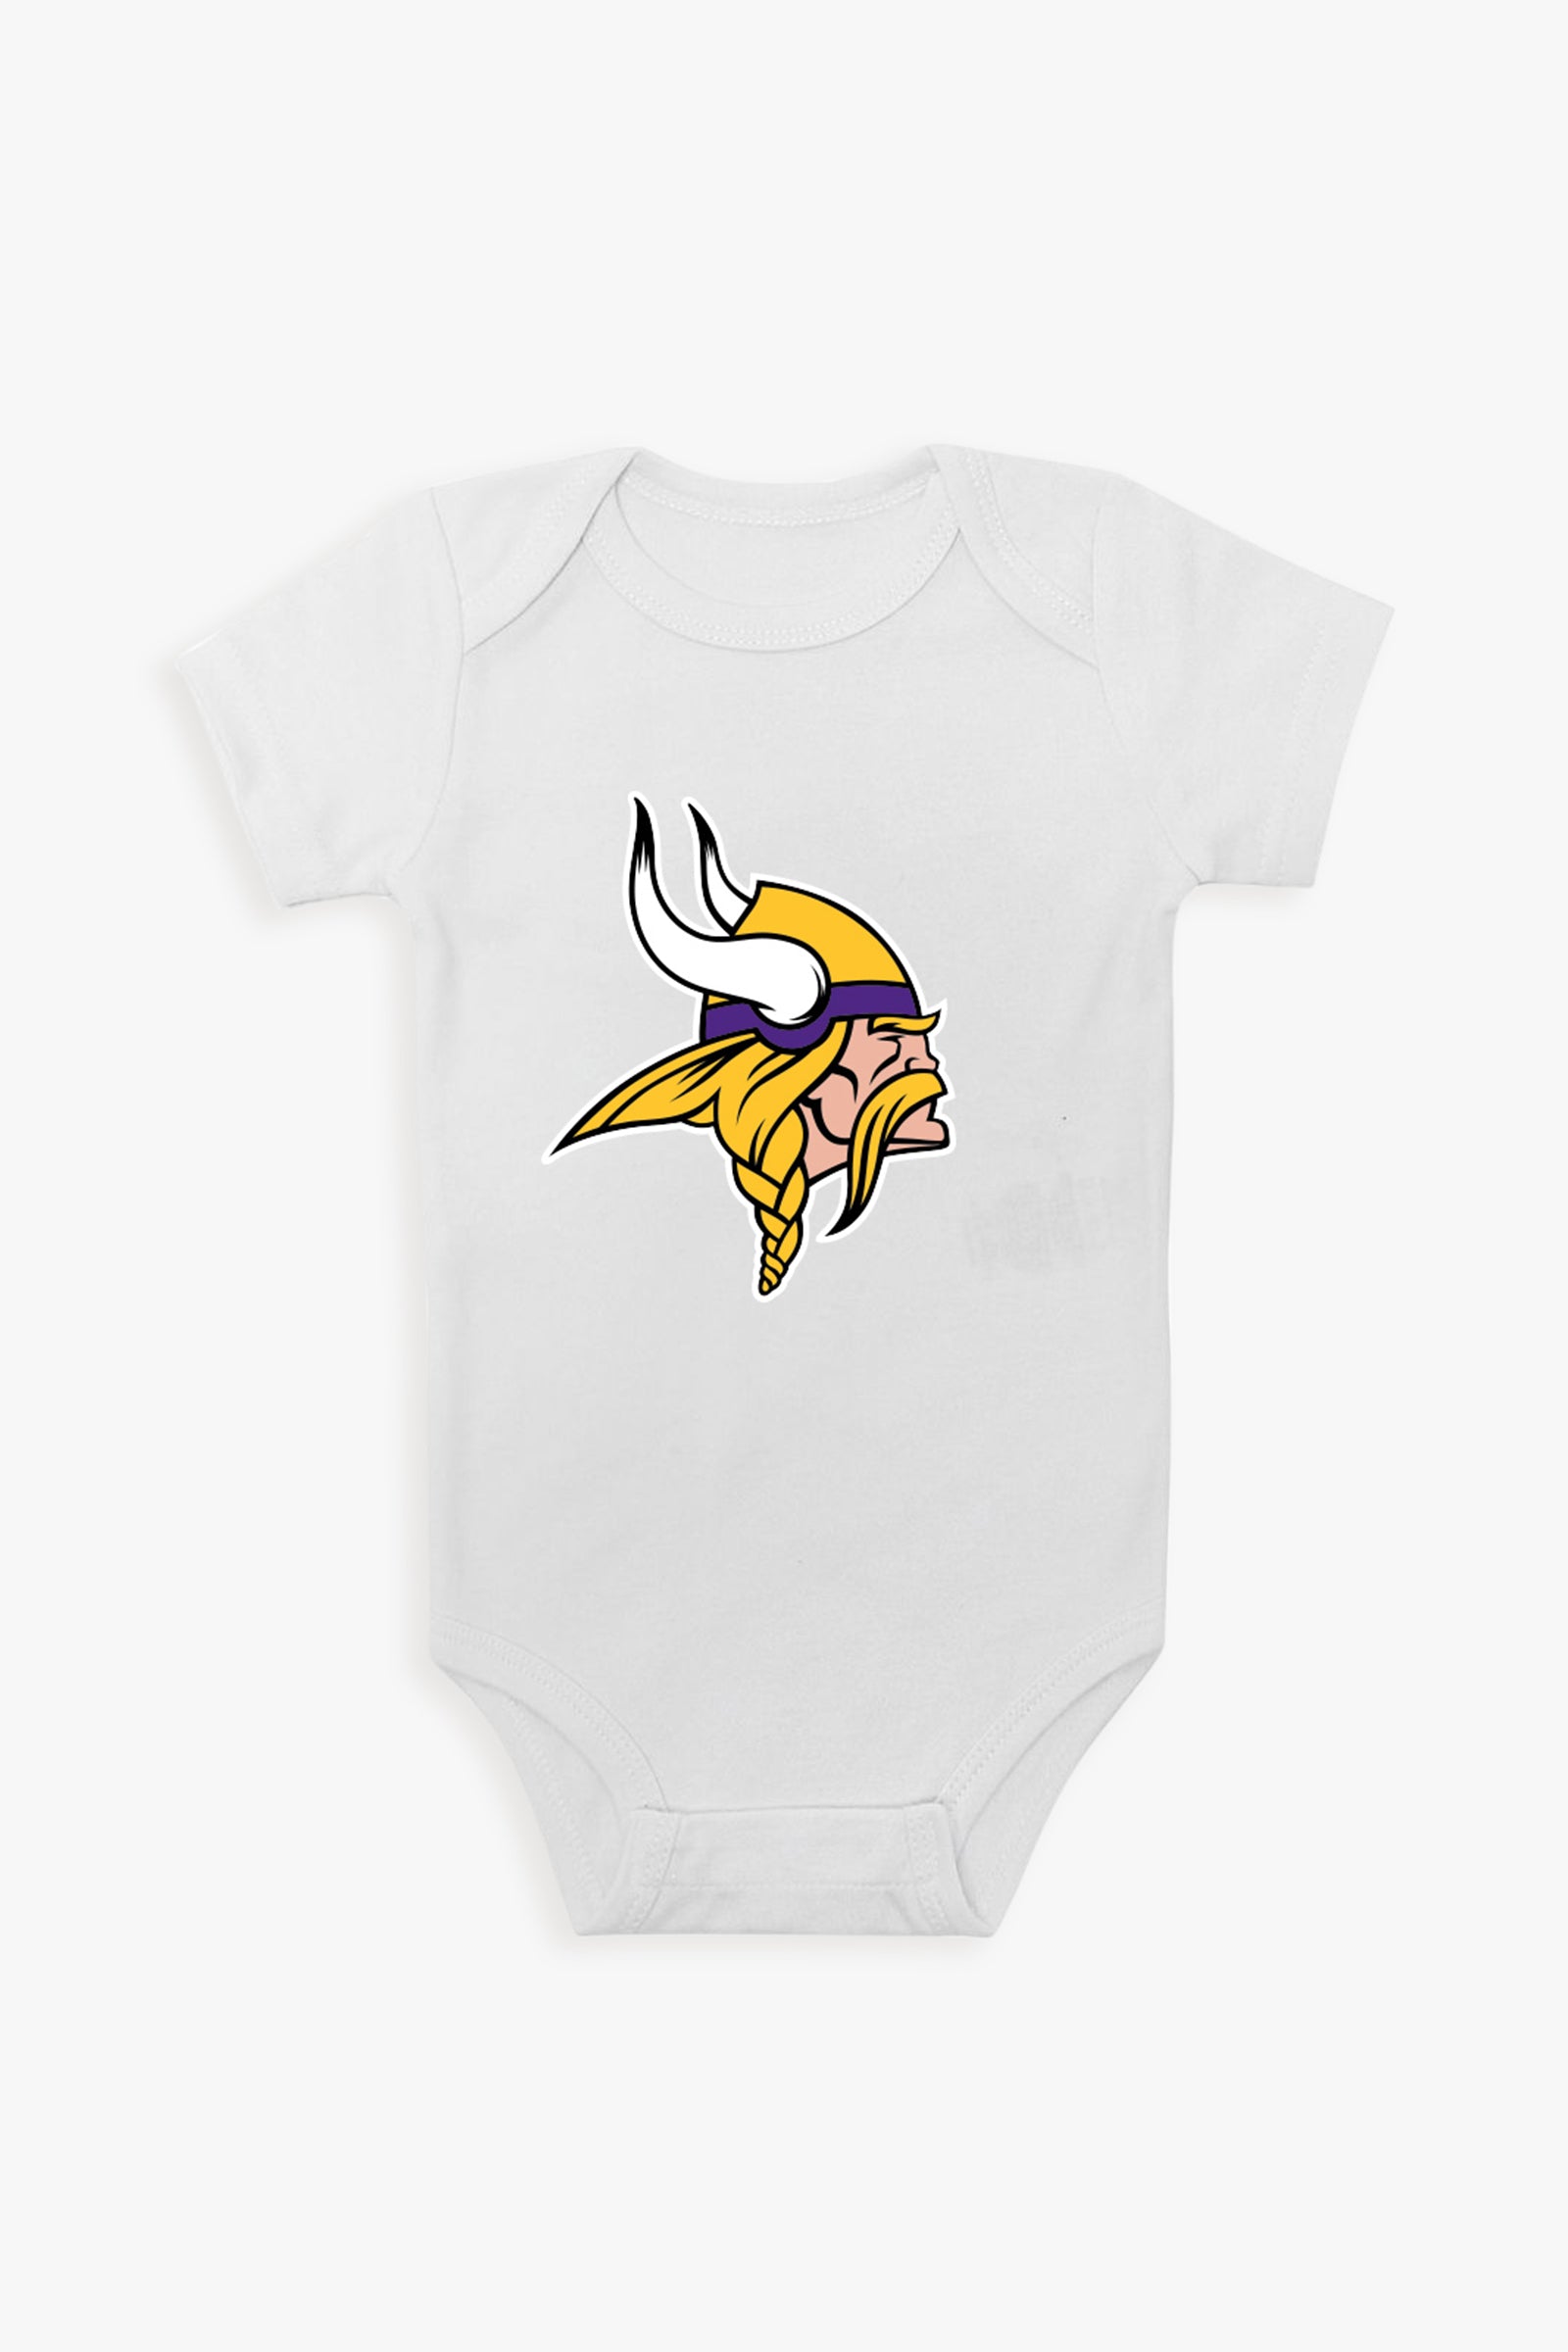 Gertex NFL White Baby Short-Sleeve Bodysuit - NFC Division